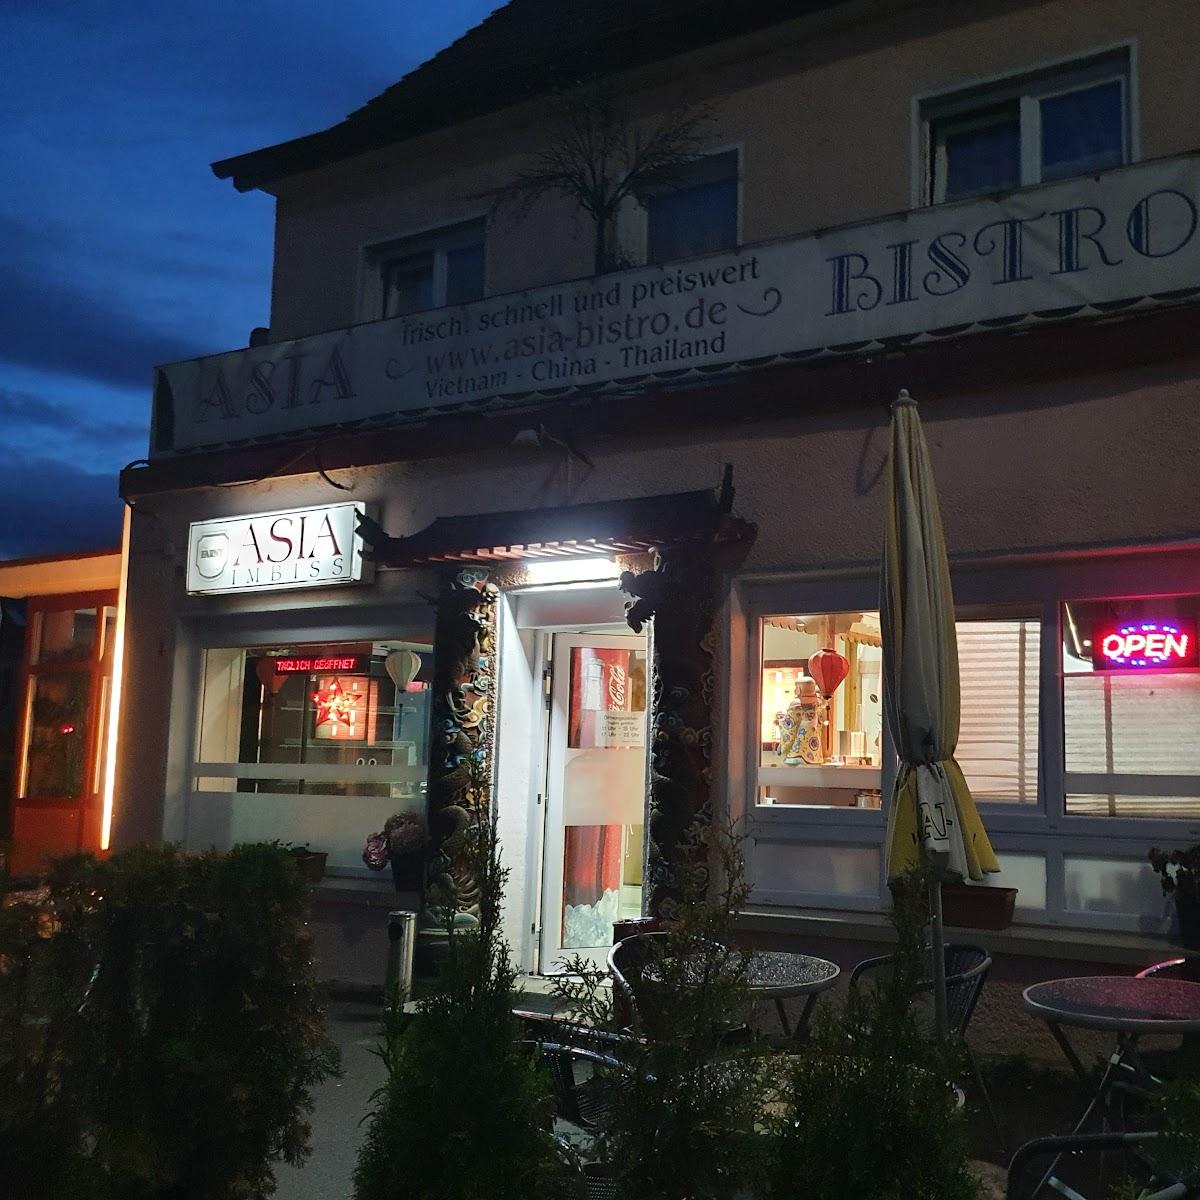 Restaurant "Asia Bistro" in Friedrichshafen